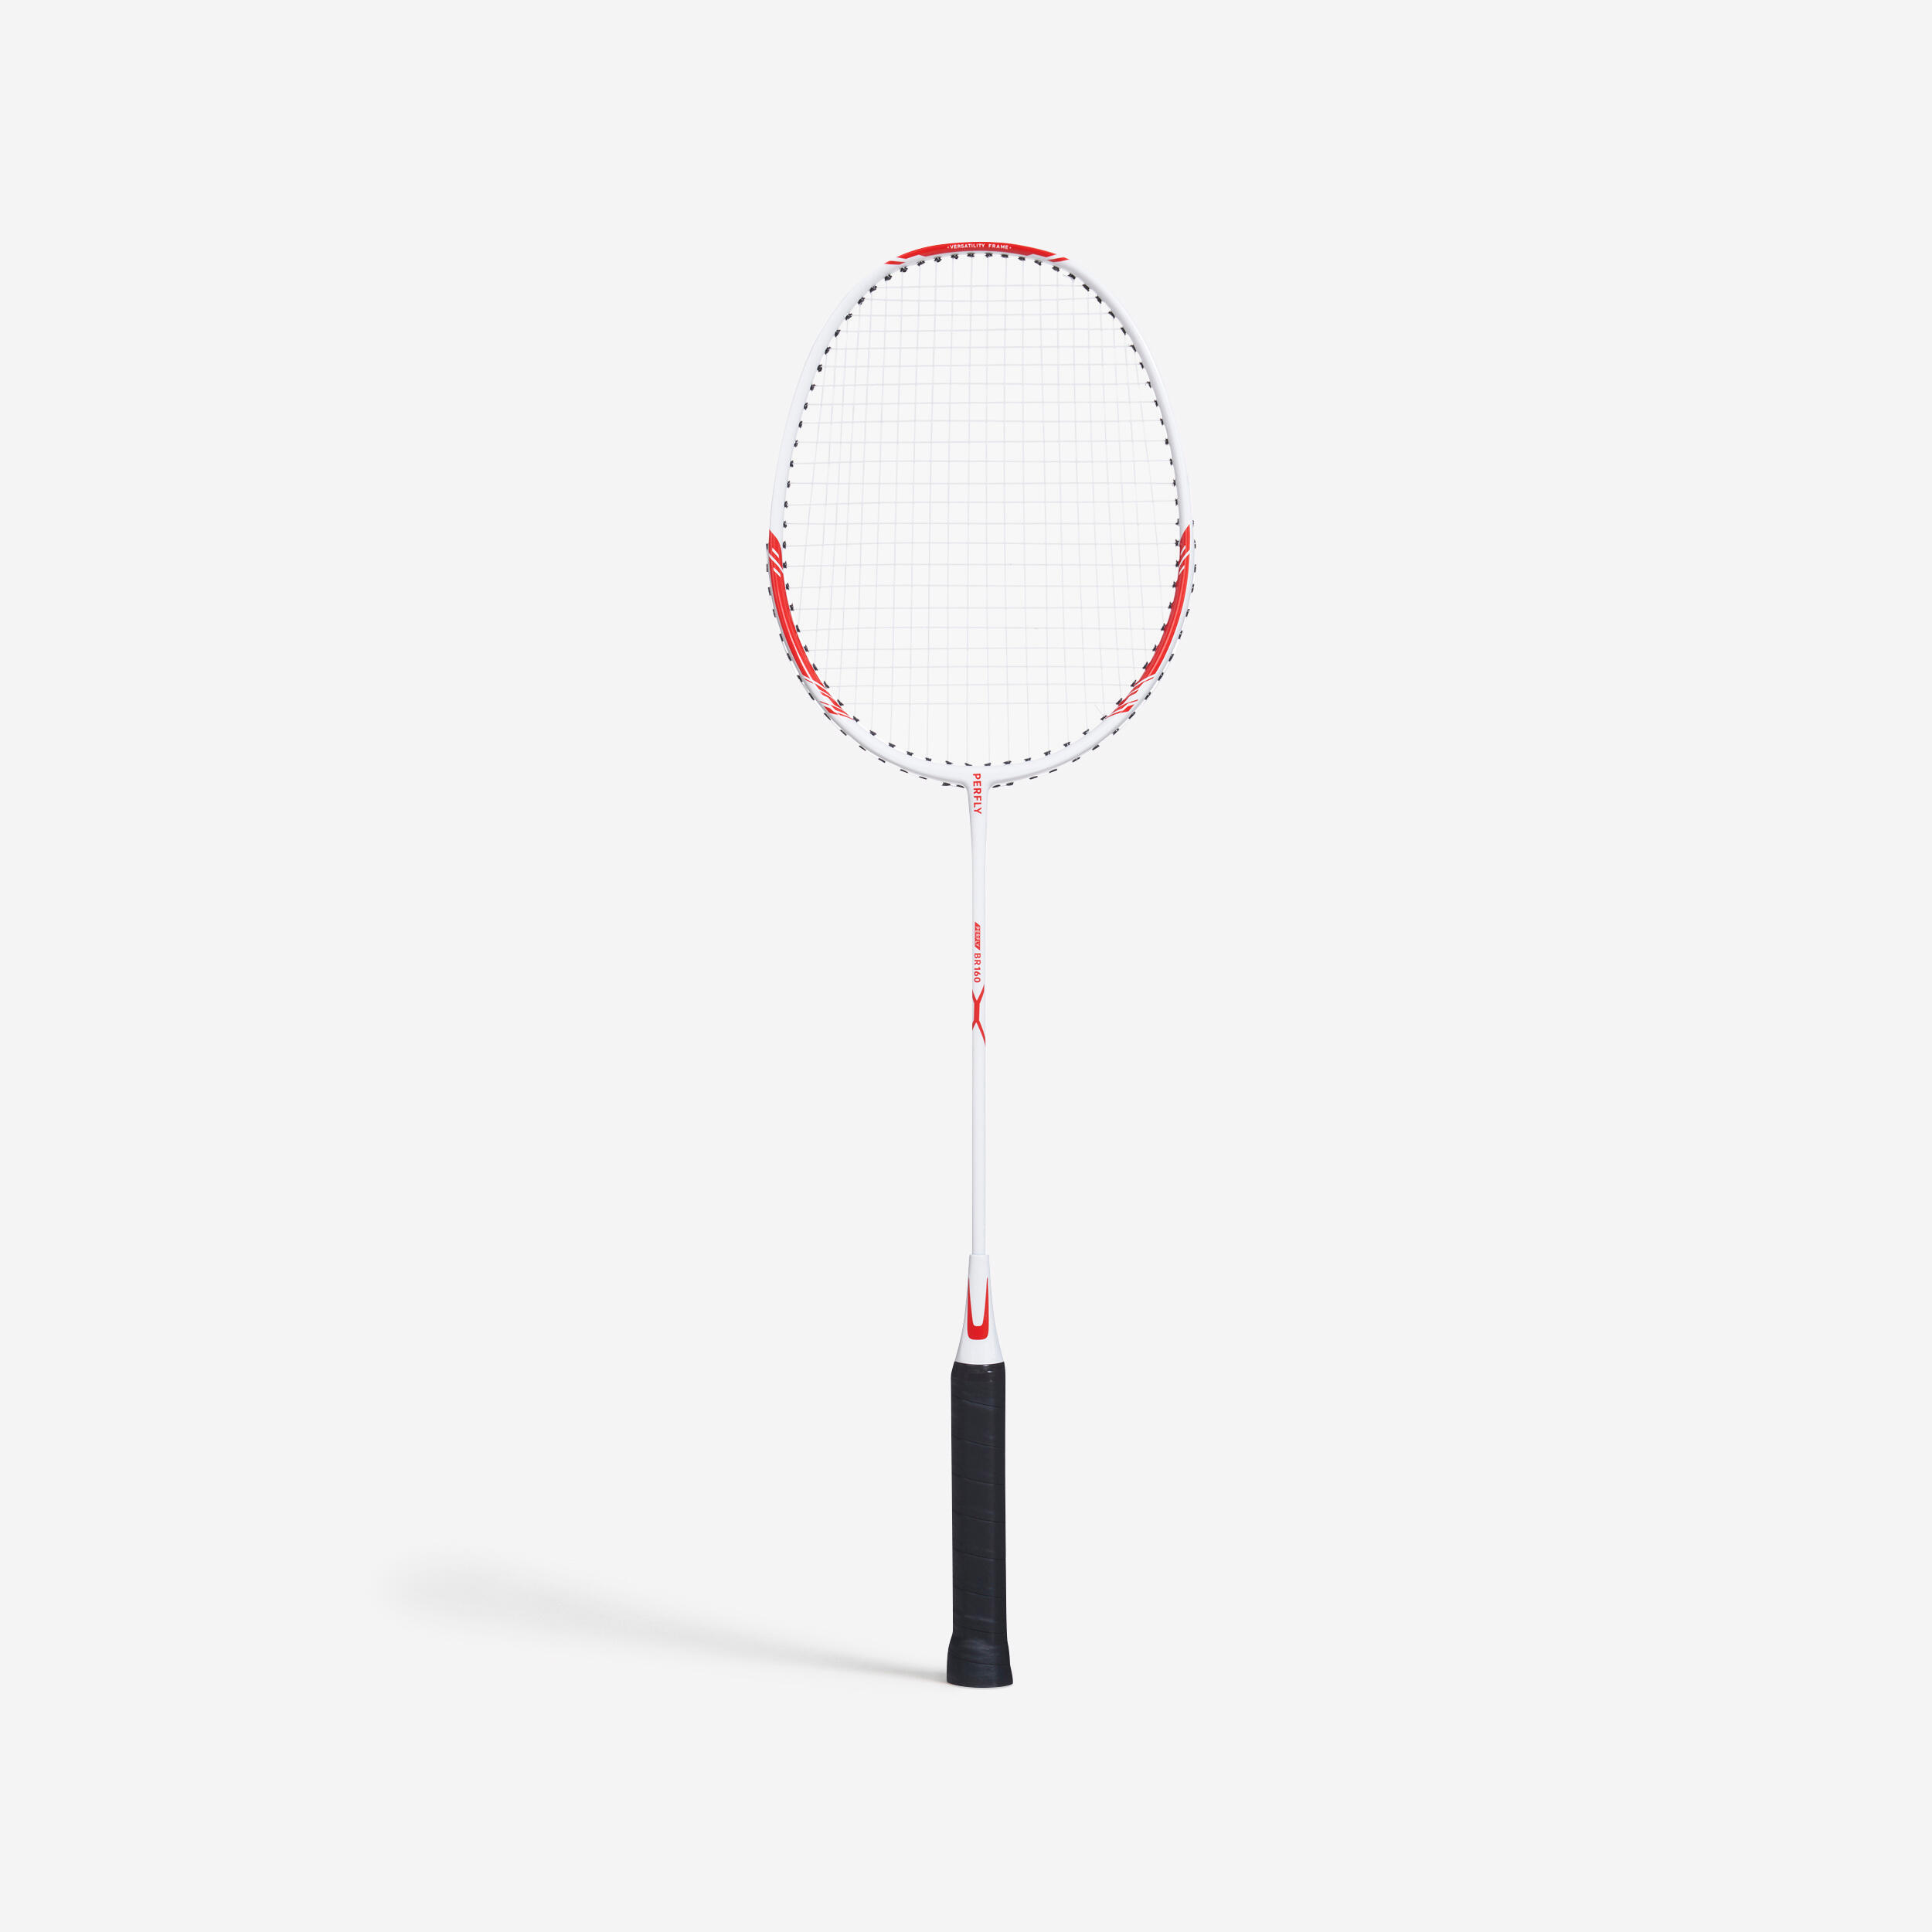 Linea racchetta da badminton in fibra di nylon fai-da-te 6 colori 10m nylon durevole alta flessibilità racchetta da badminton linea racchetta String linea da badminton alta resistenza elastica 